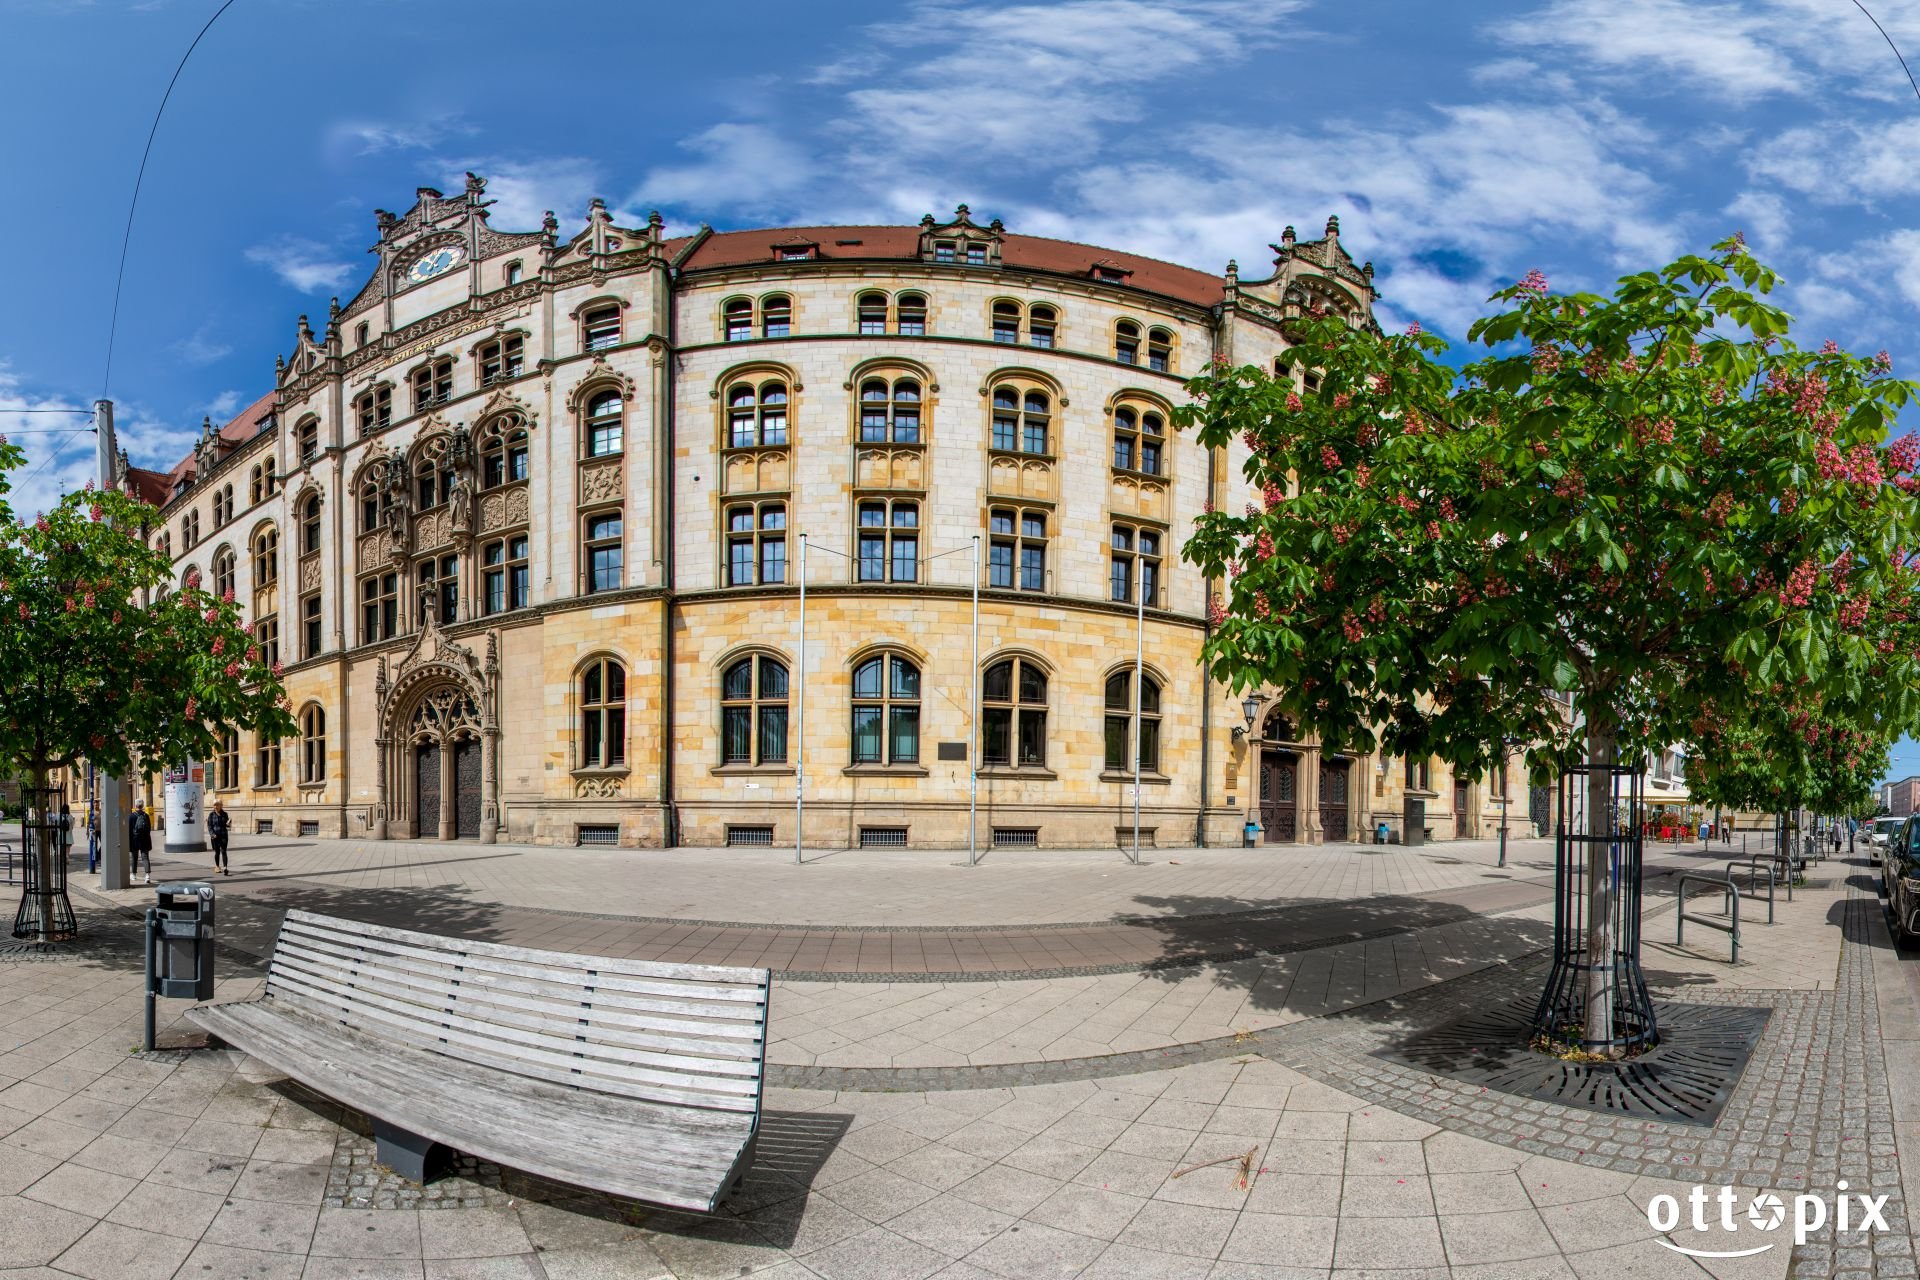 Justizzentrum Magdeburg Altstadt